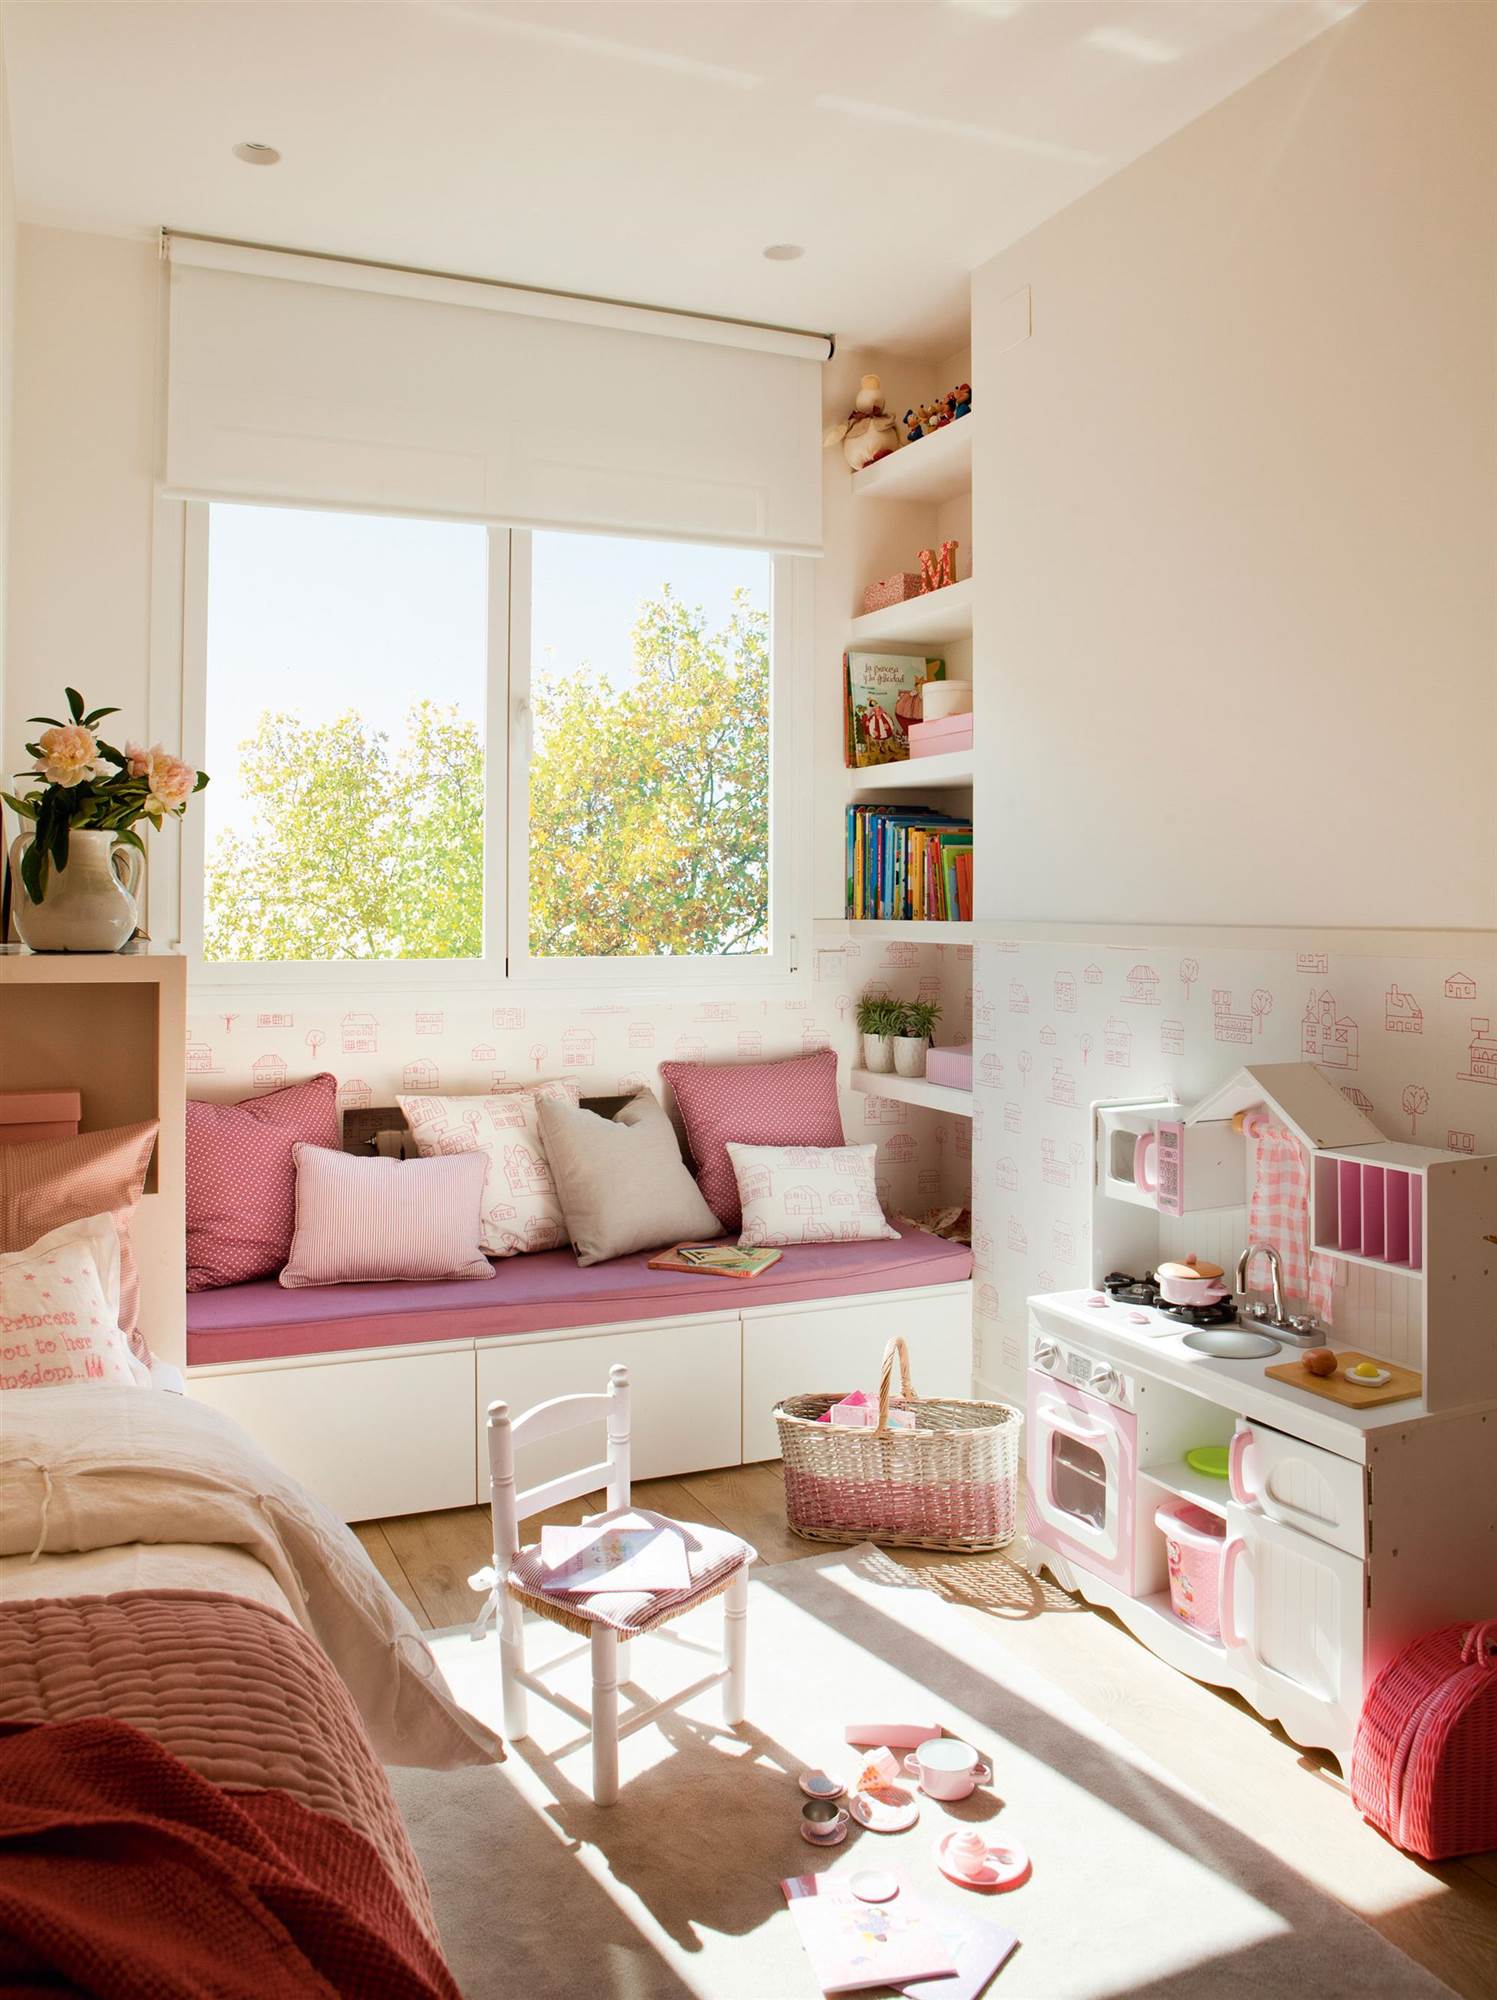 Dormitorio infantil en rosa con banco bajo la ventana, decorado por Elena Rodríguez.  